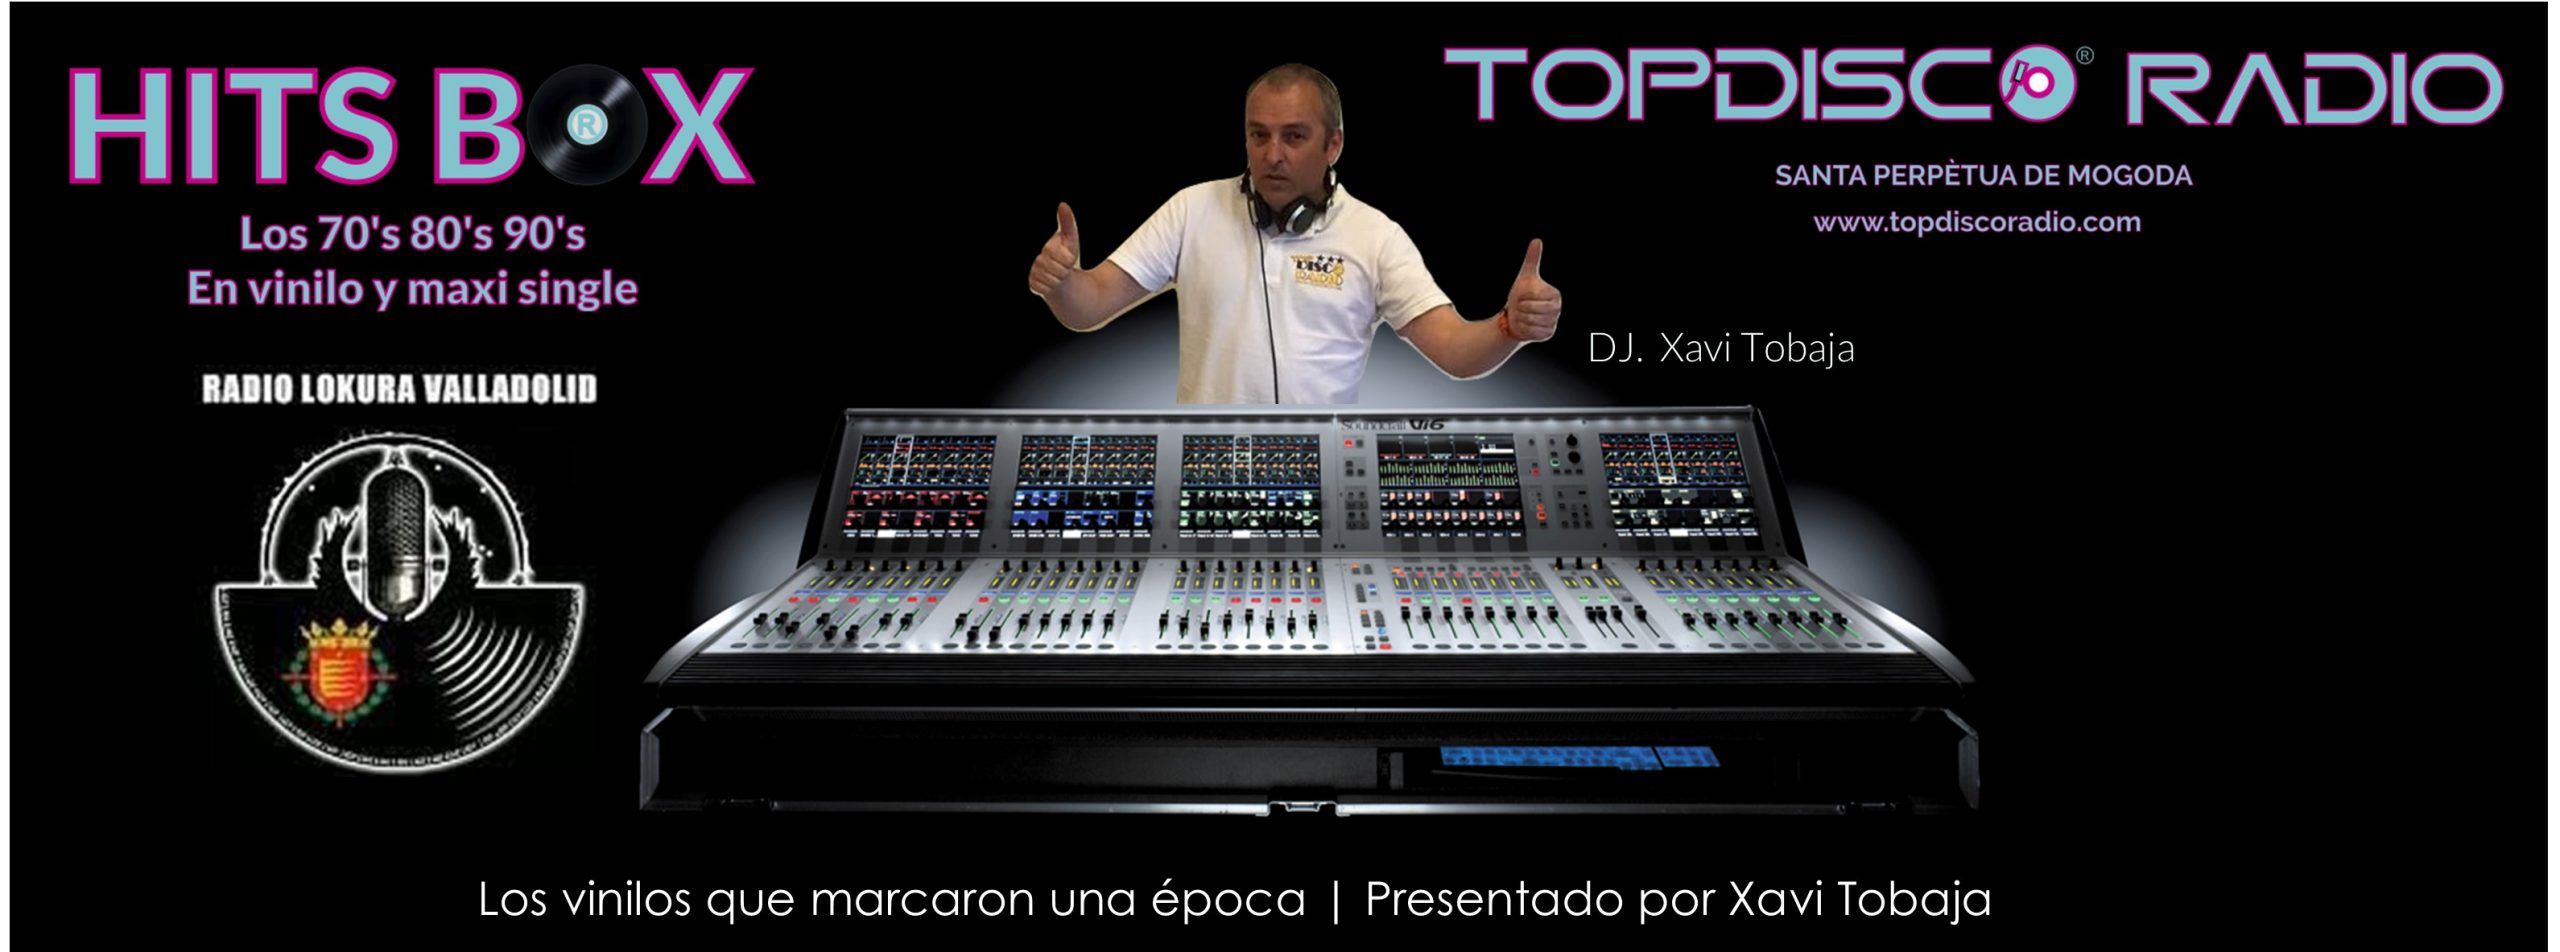 Hits Box de Topdisco Radio con Xavi Tobaja Radio Lokura Valladolid